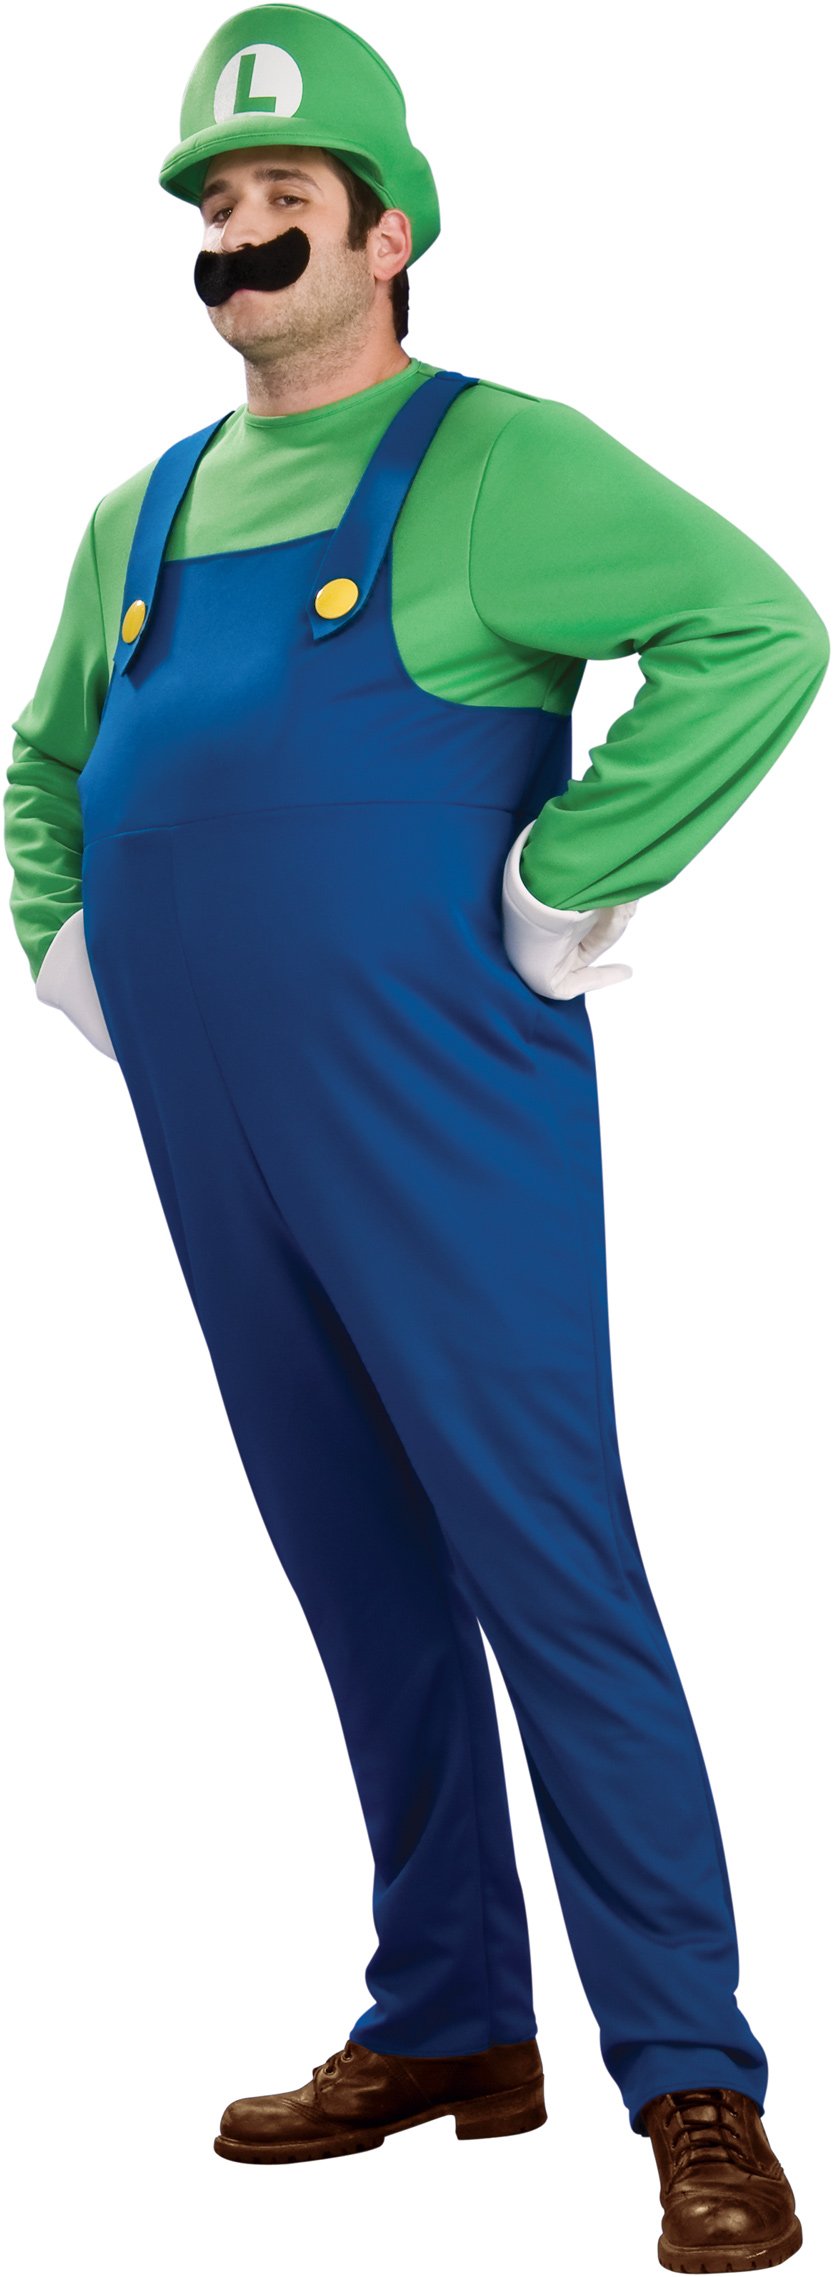 Super Mario Bros. - Deluxe Luigi Plus Adult Costume